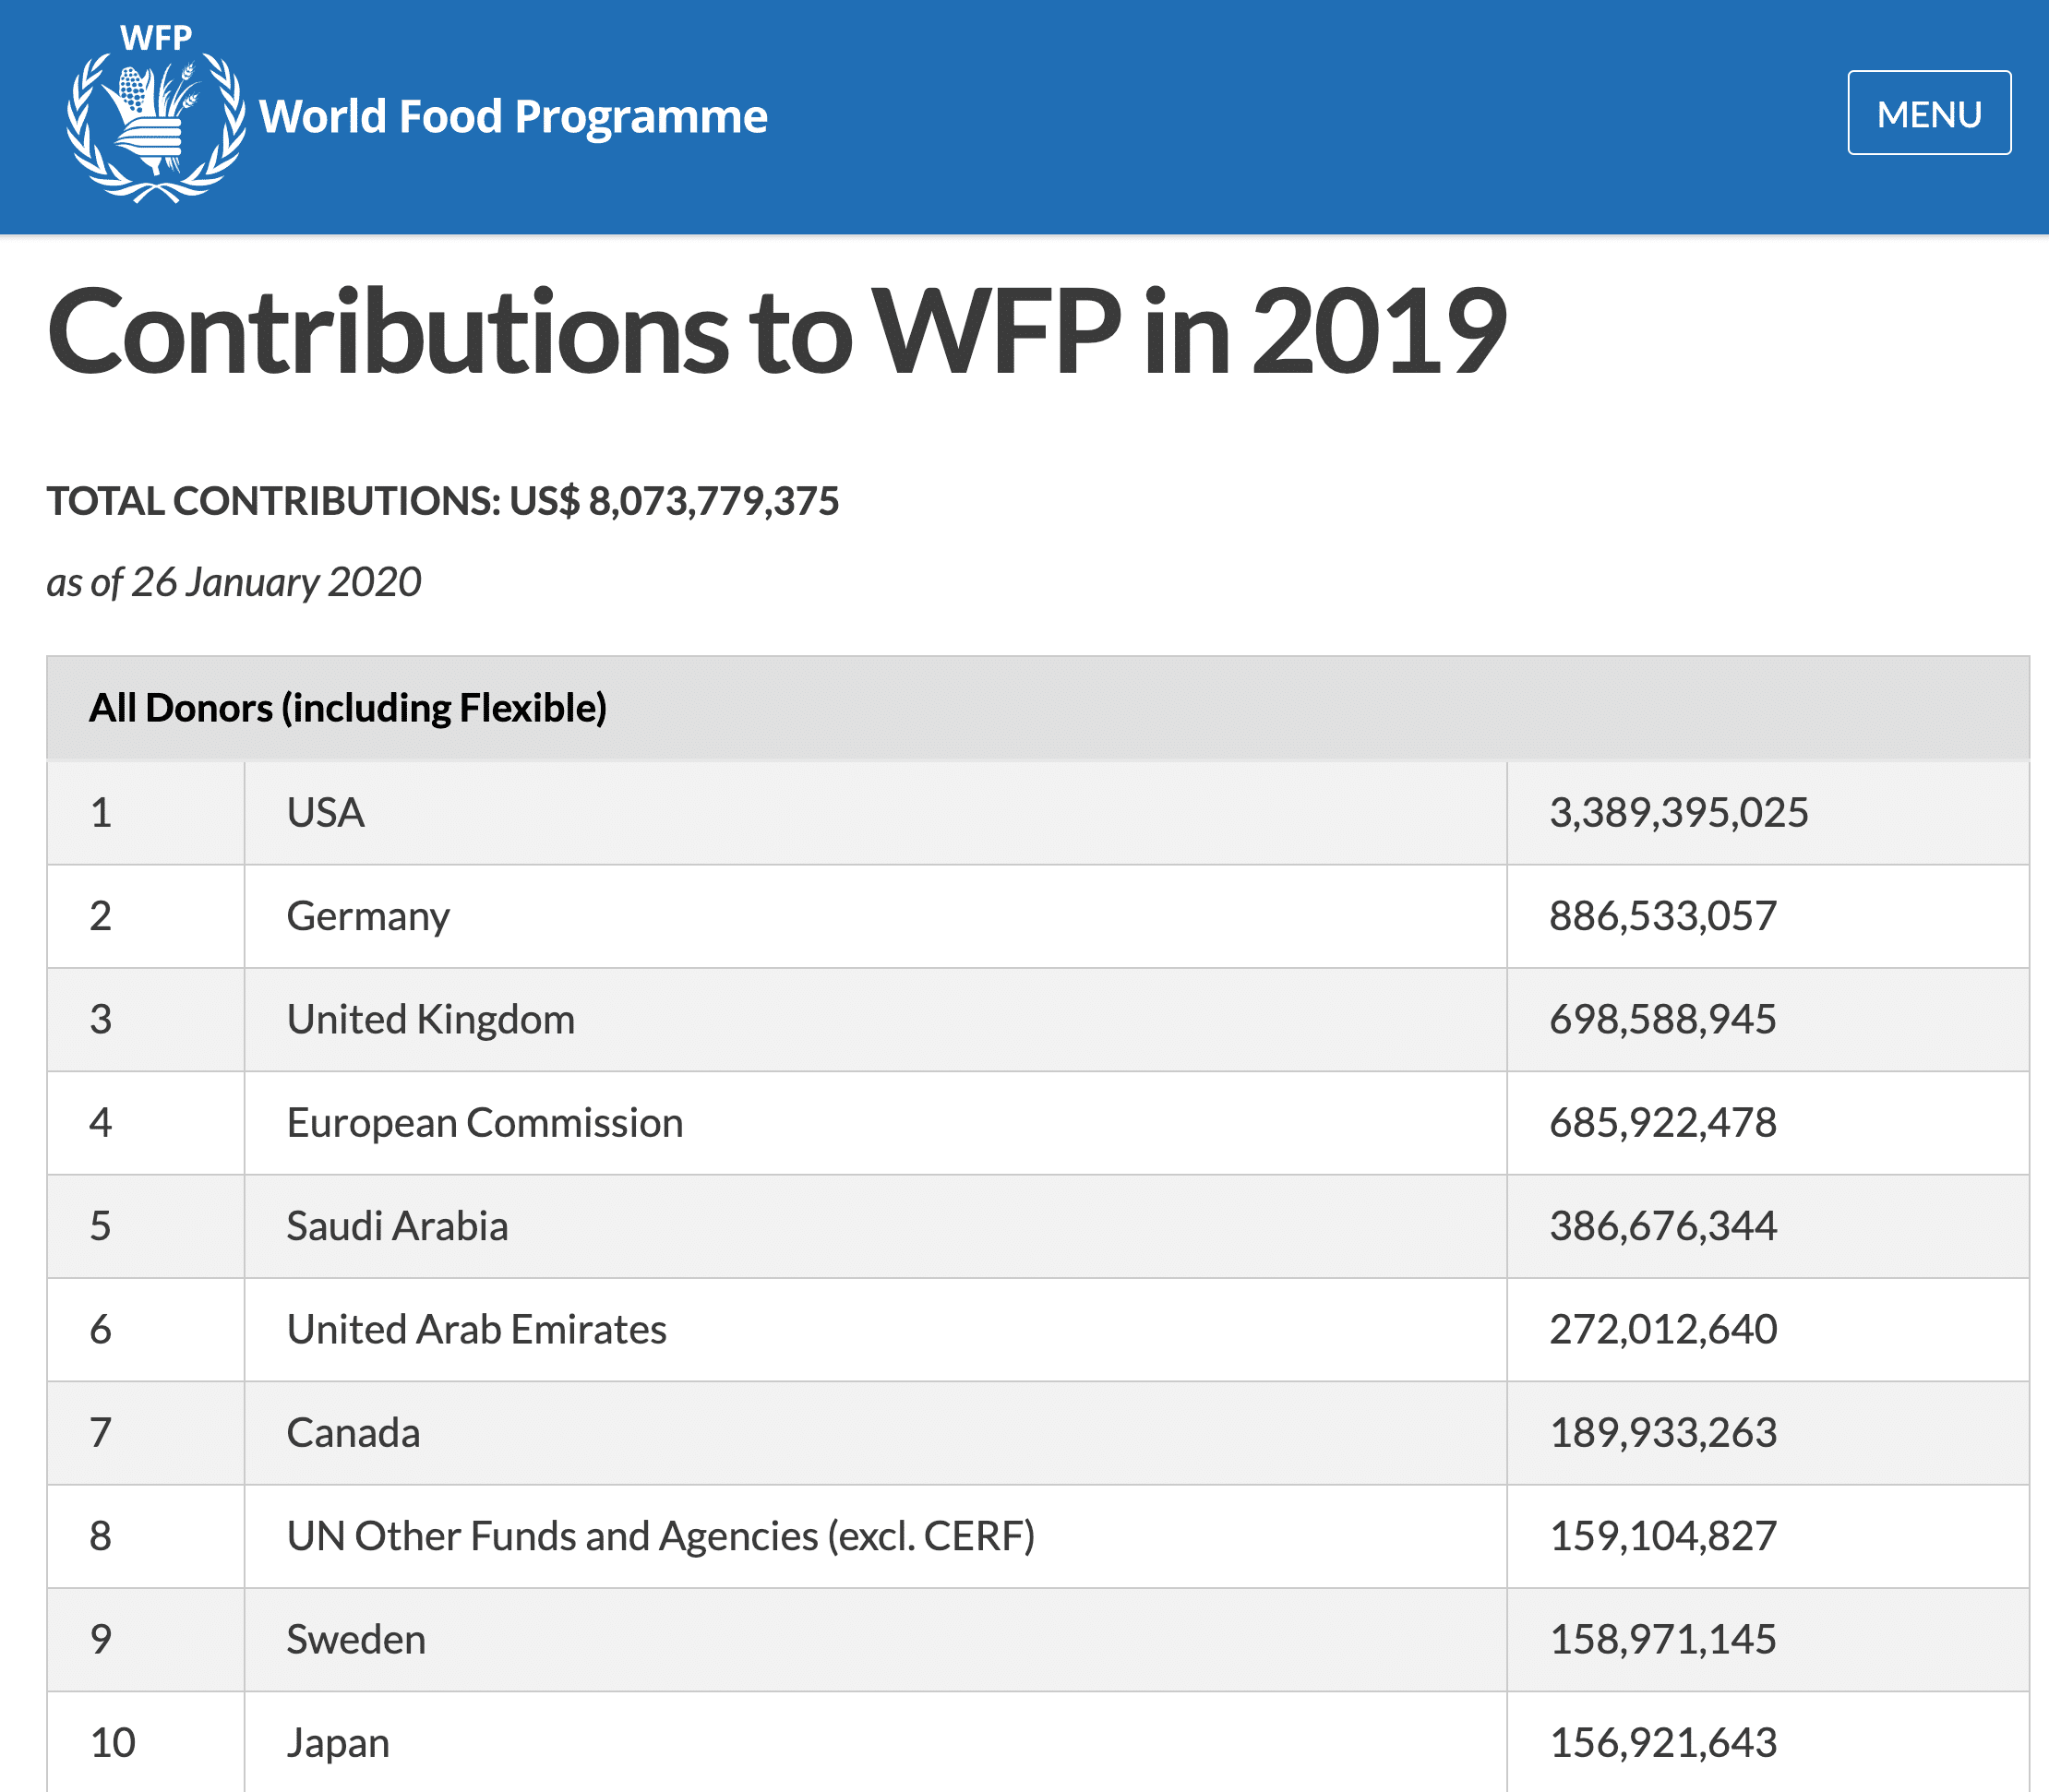 Top Ten Contributors to WFP in 2019